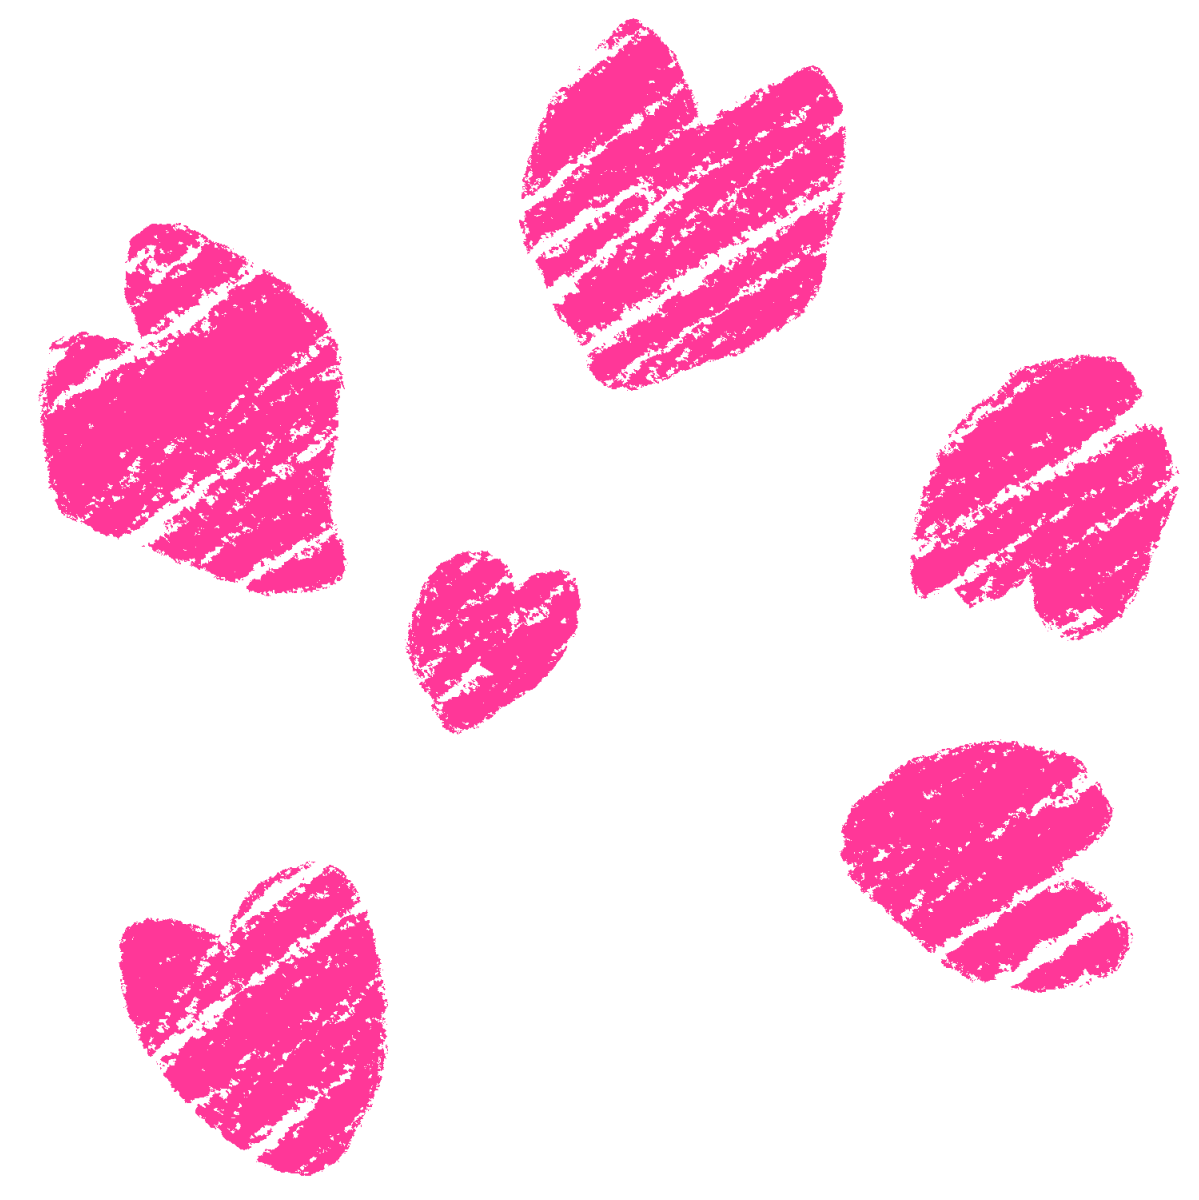 クレヨン塗り【桜の花びら】暖色セットのイラスト / Crayon Painting [Cherry Blossom Petals] Warm Color Set Illustration